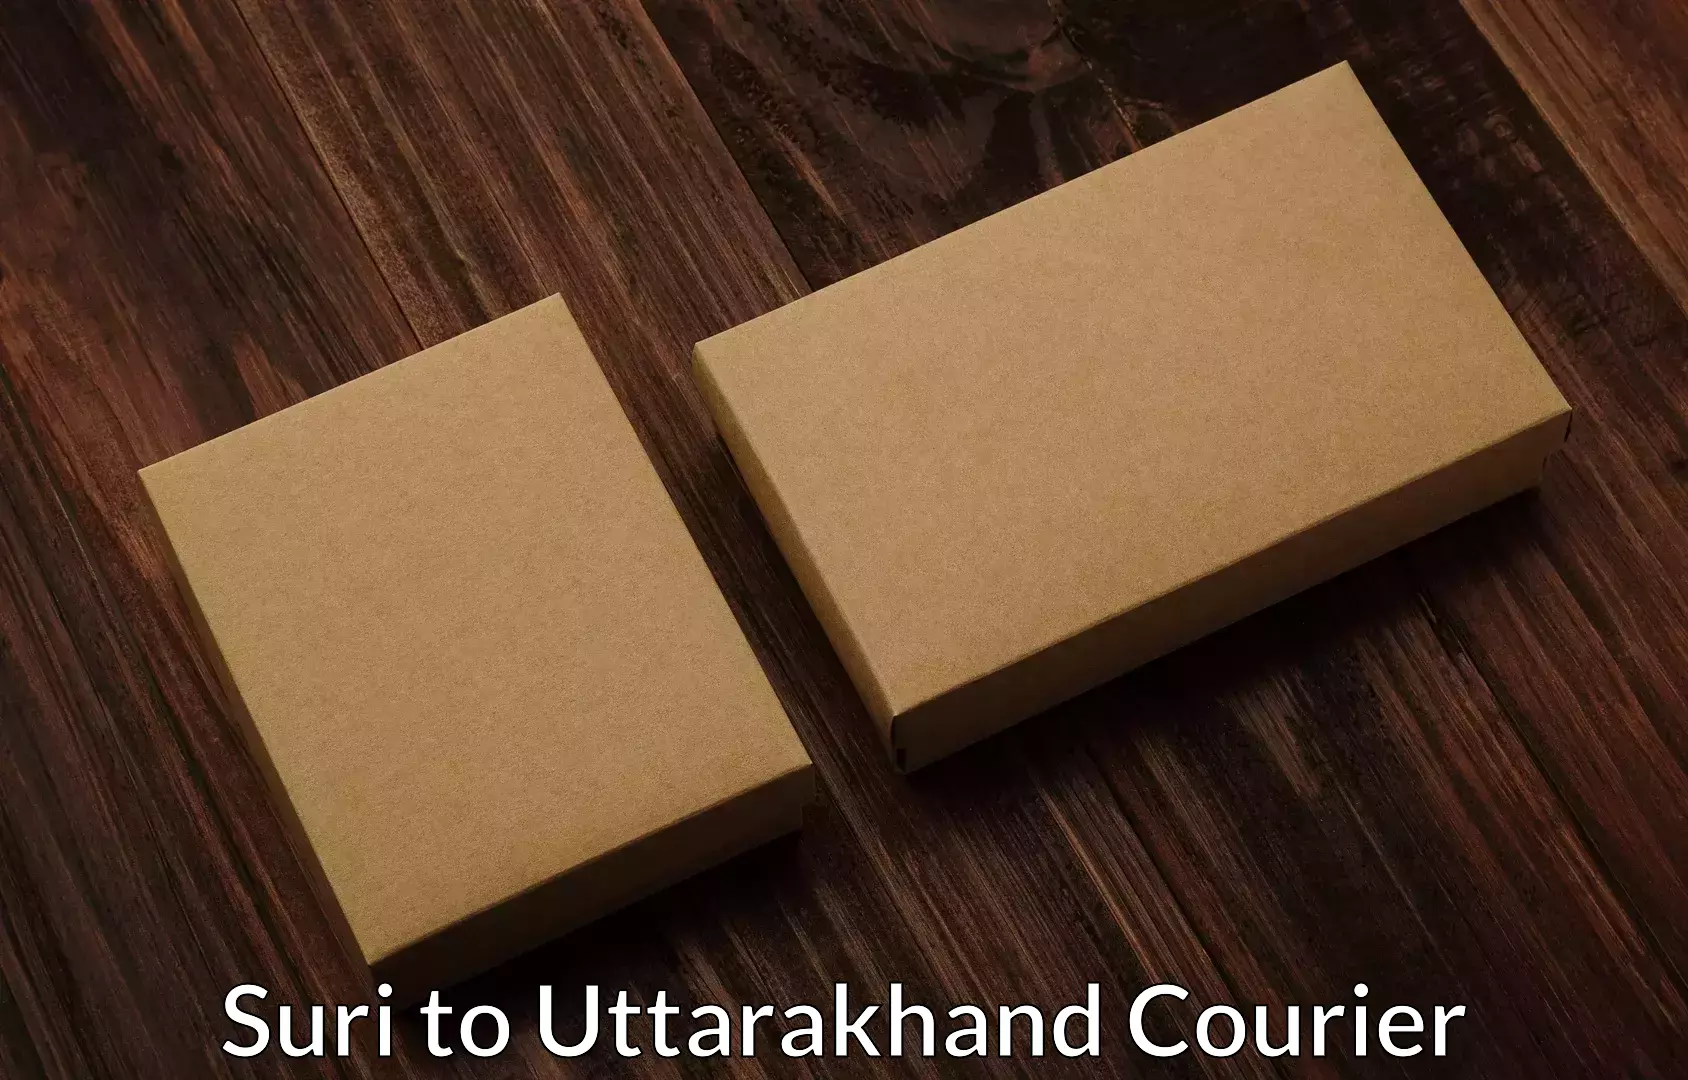 Professional moving company Suri to Uttarakhand